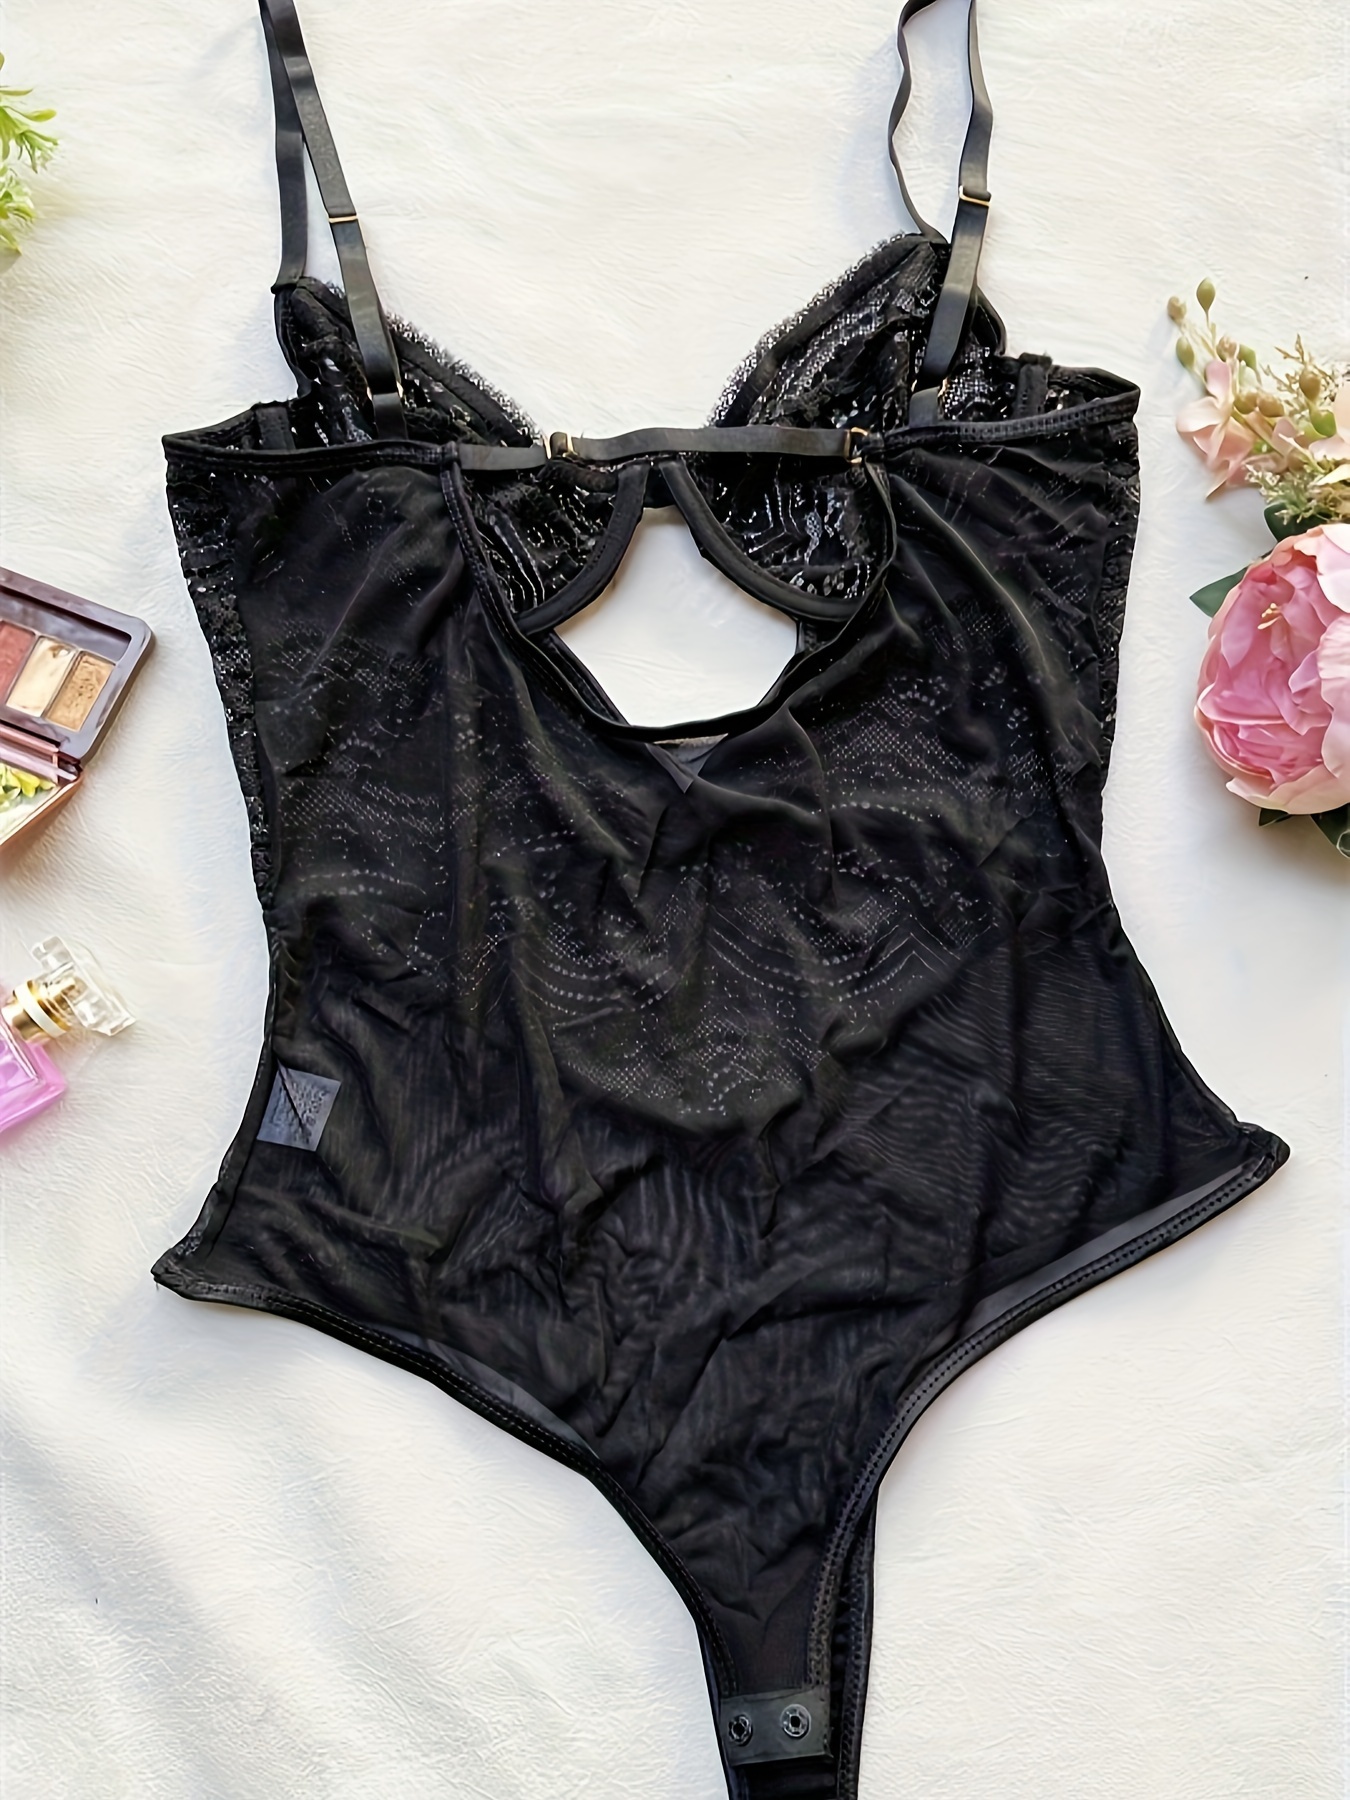 Black Lingerie Suit Women Floral Lace Teddy Lingerie Bodysuit Plus